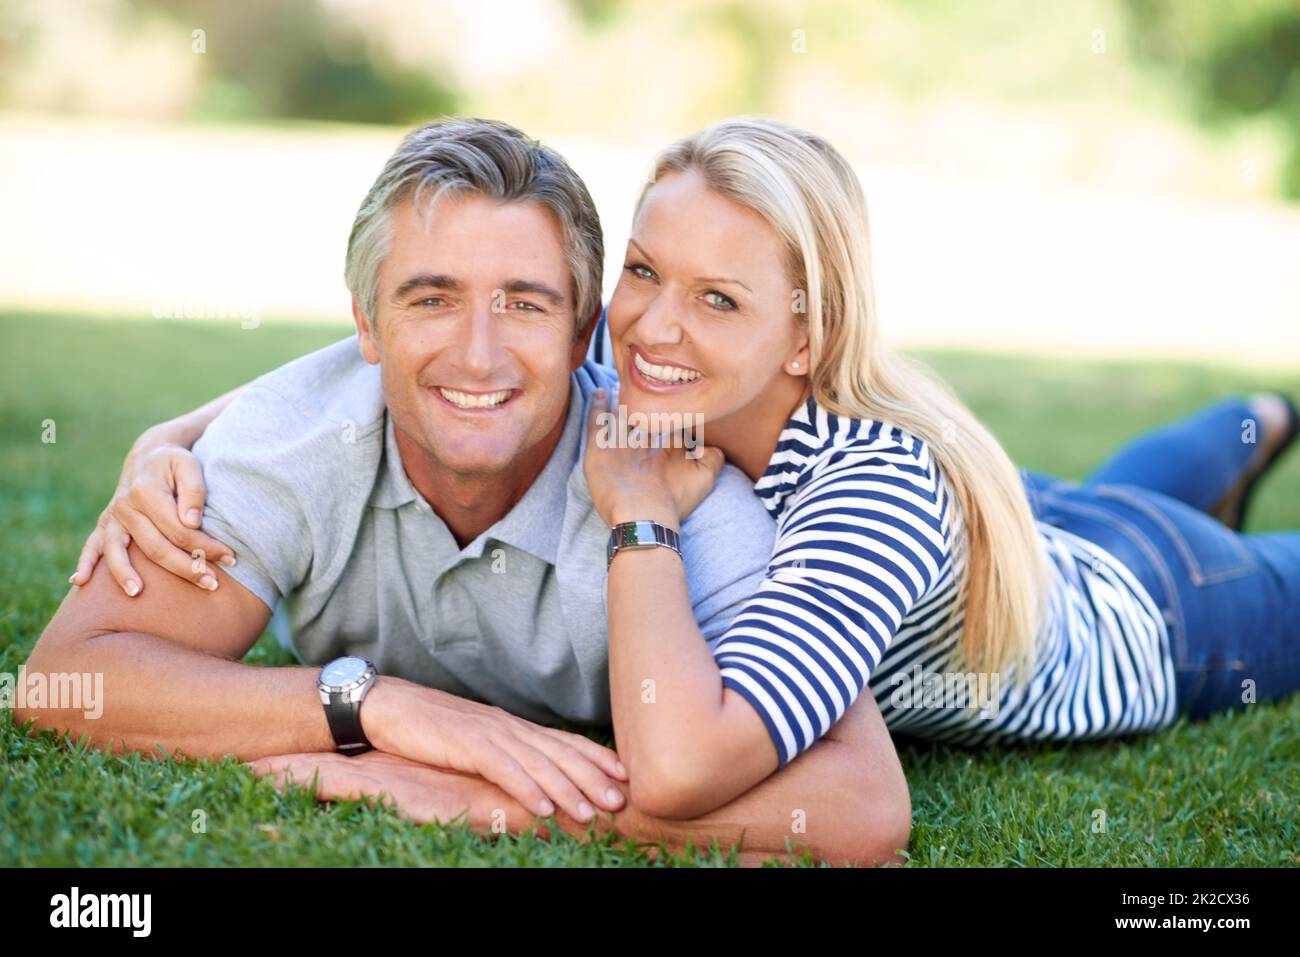 HES il marito perfetto. Ritratto corto di una coppia matura affettuosa nel parco. Foto Stock